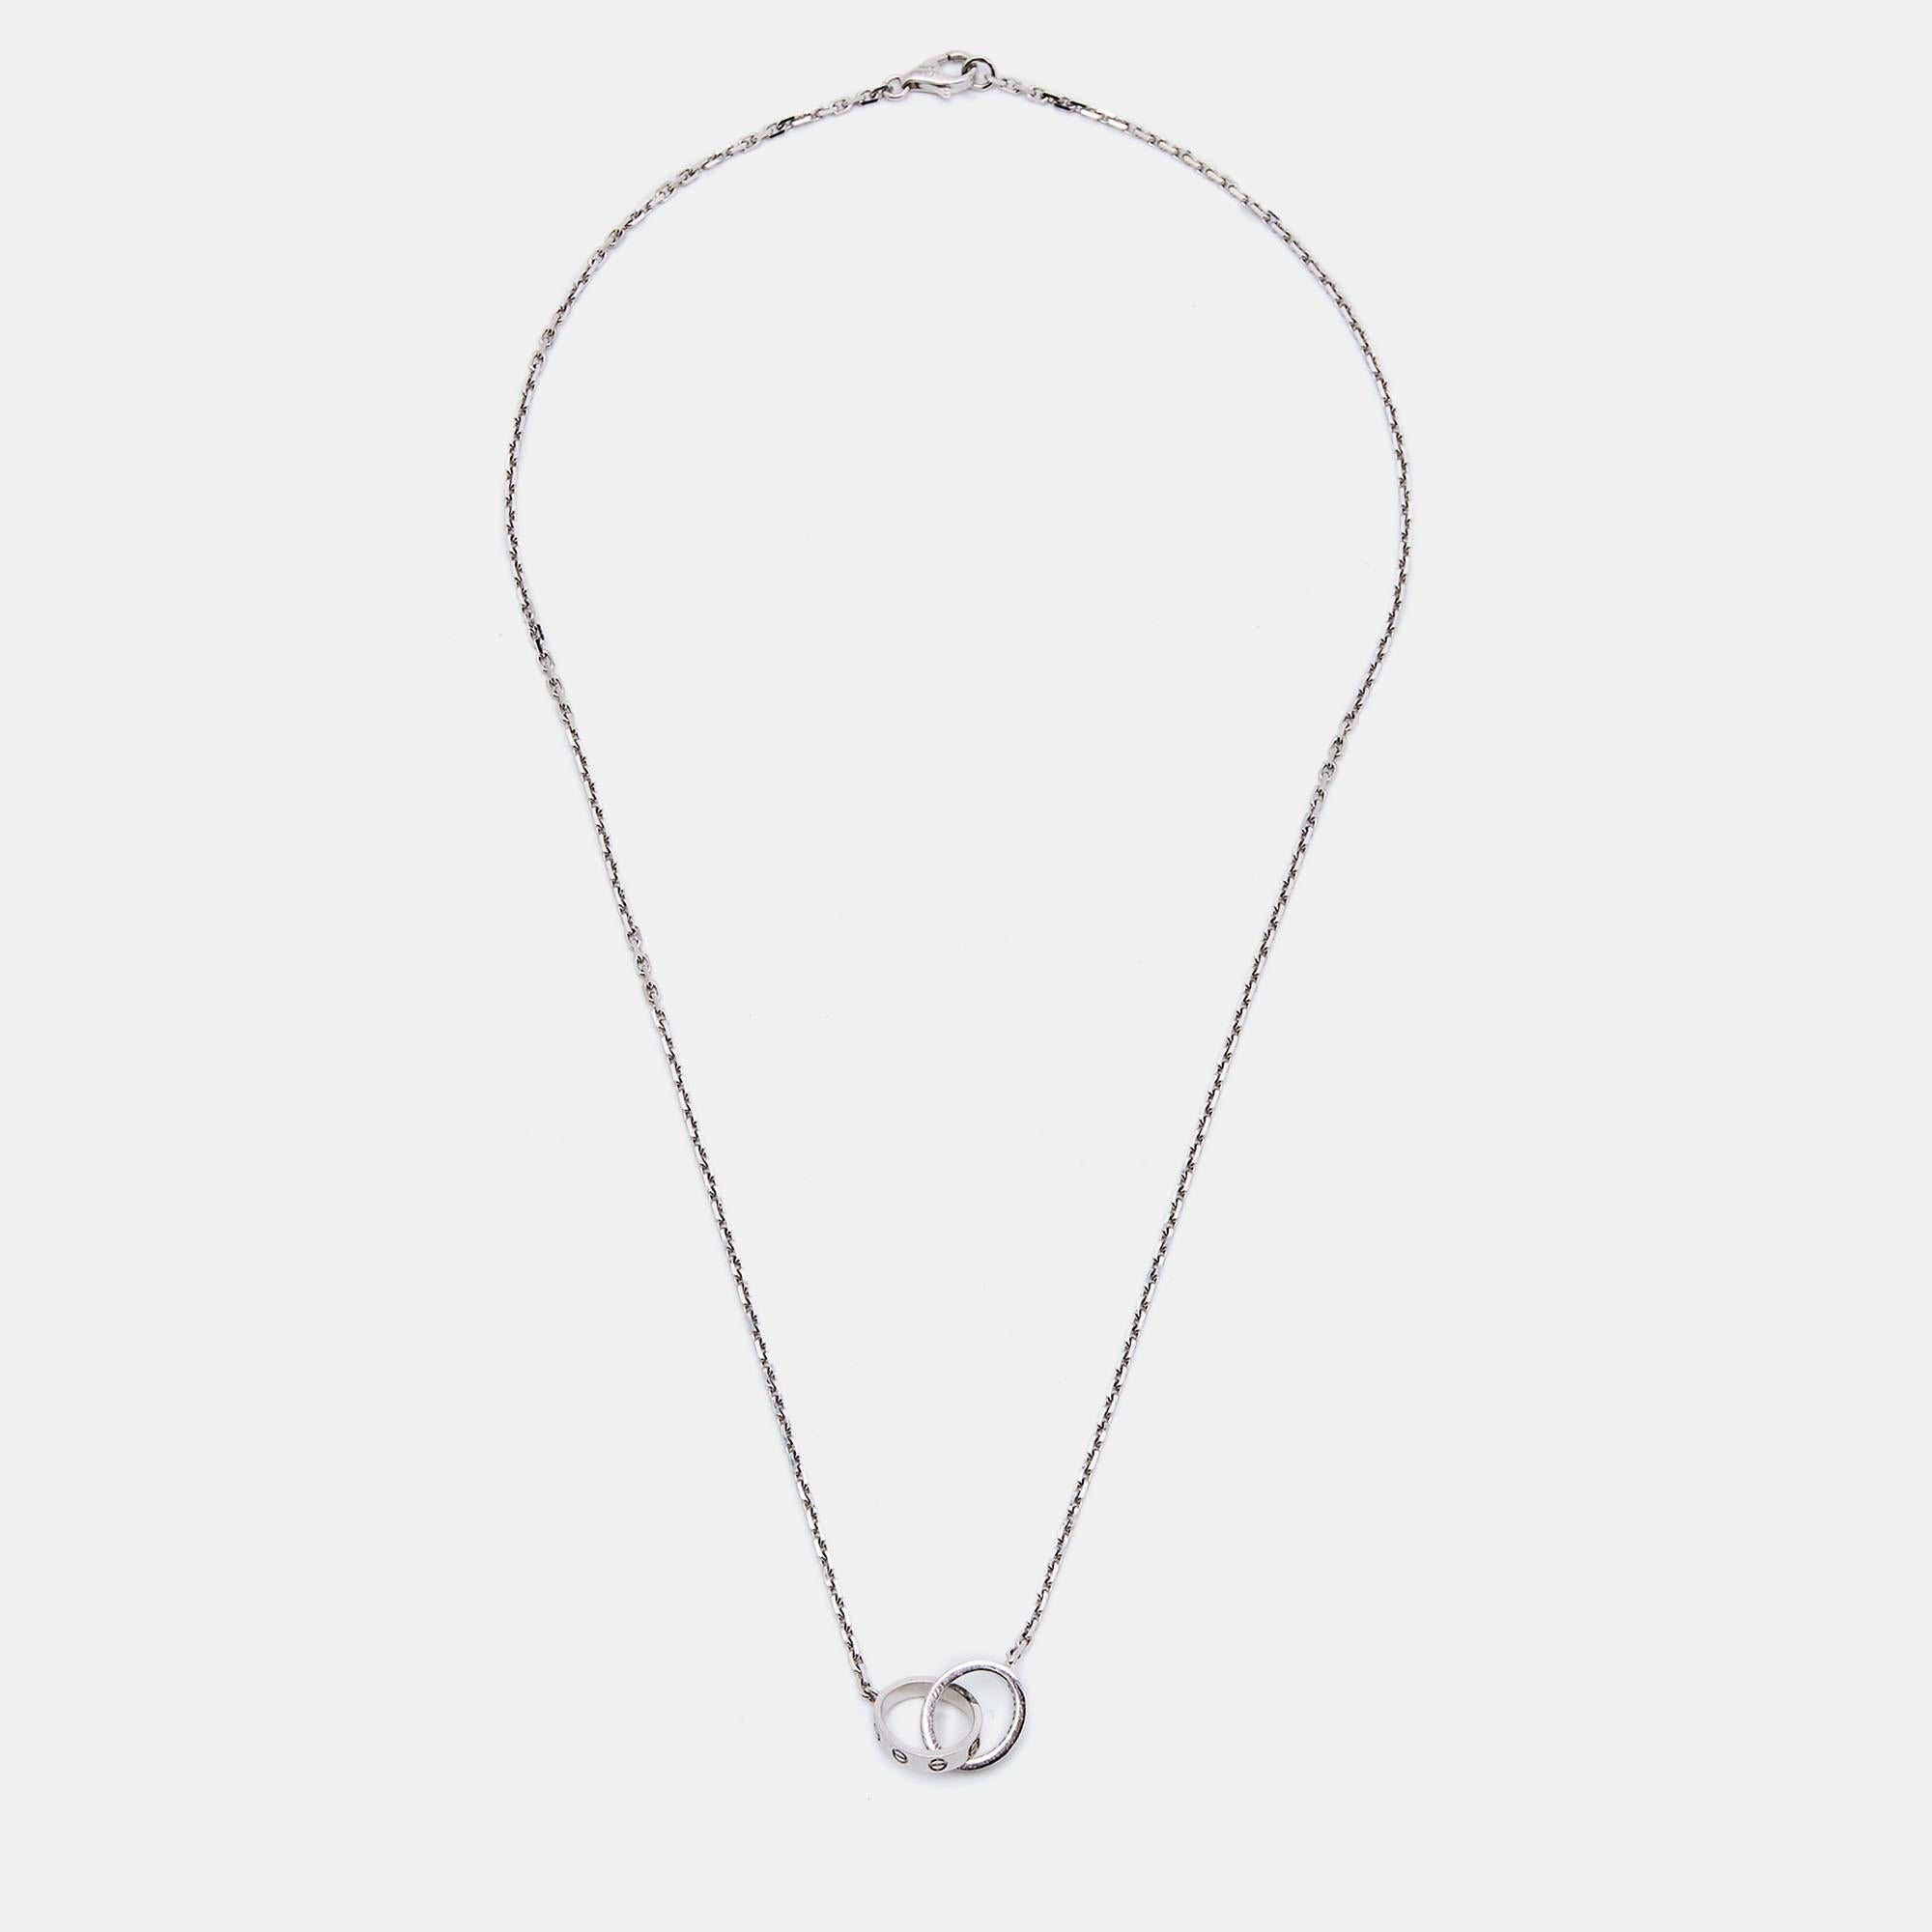 Le collier Love de Cartier est une pièce exquise réalisée en or blanc 18 carats. Il présente des anneaux entrelacés ornés de diamants taille brillant et de motifs à vis, dégageant une élégance et une sophistication intemporelles. Ce collier